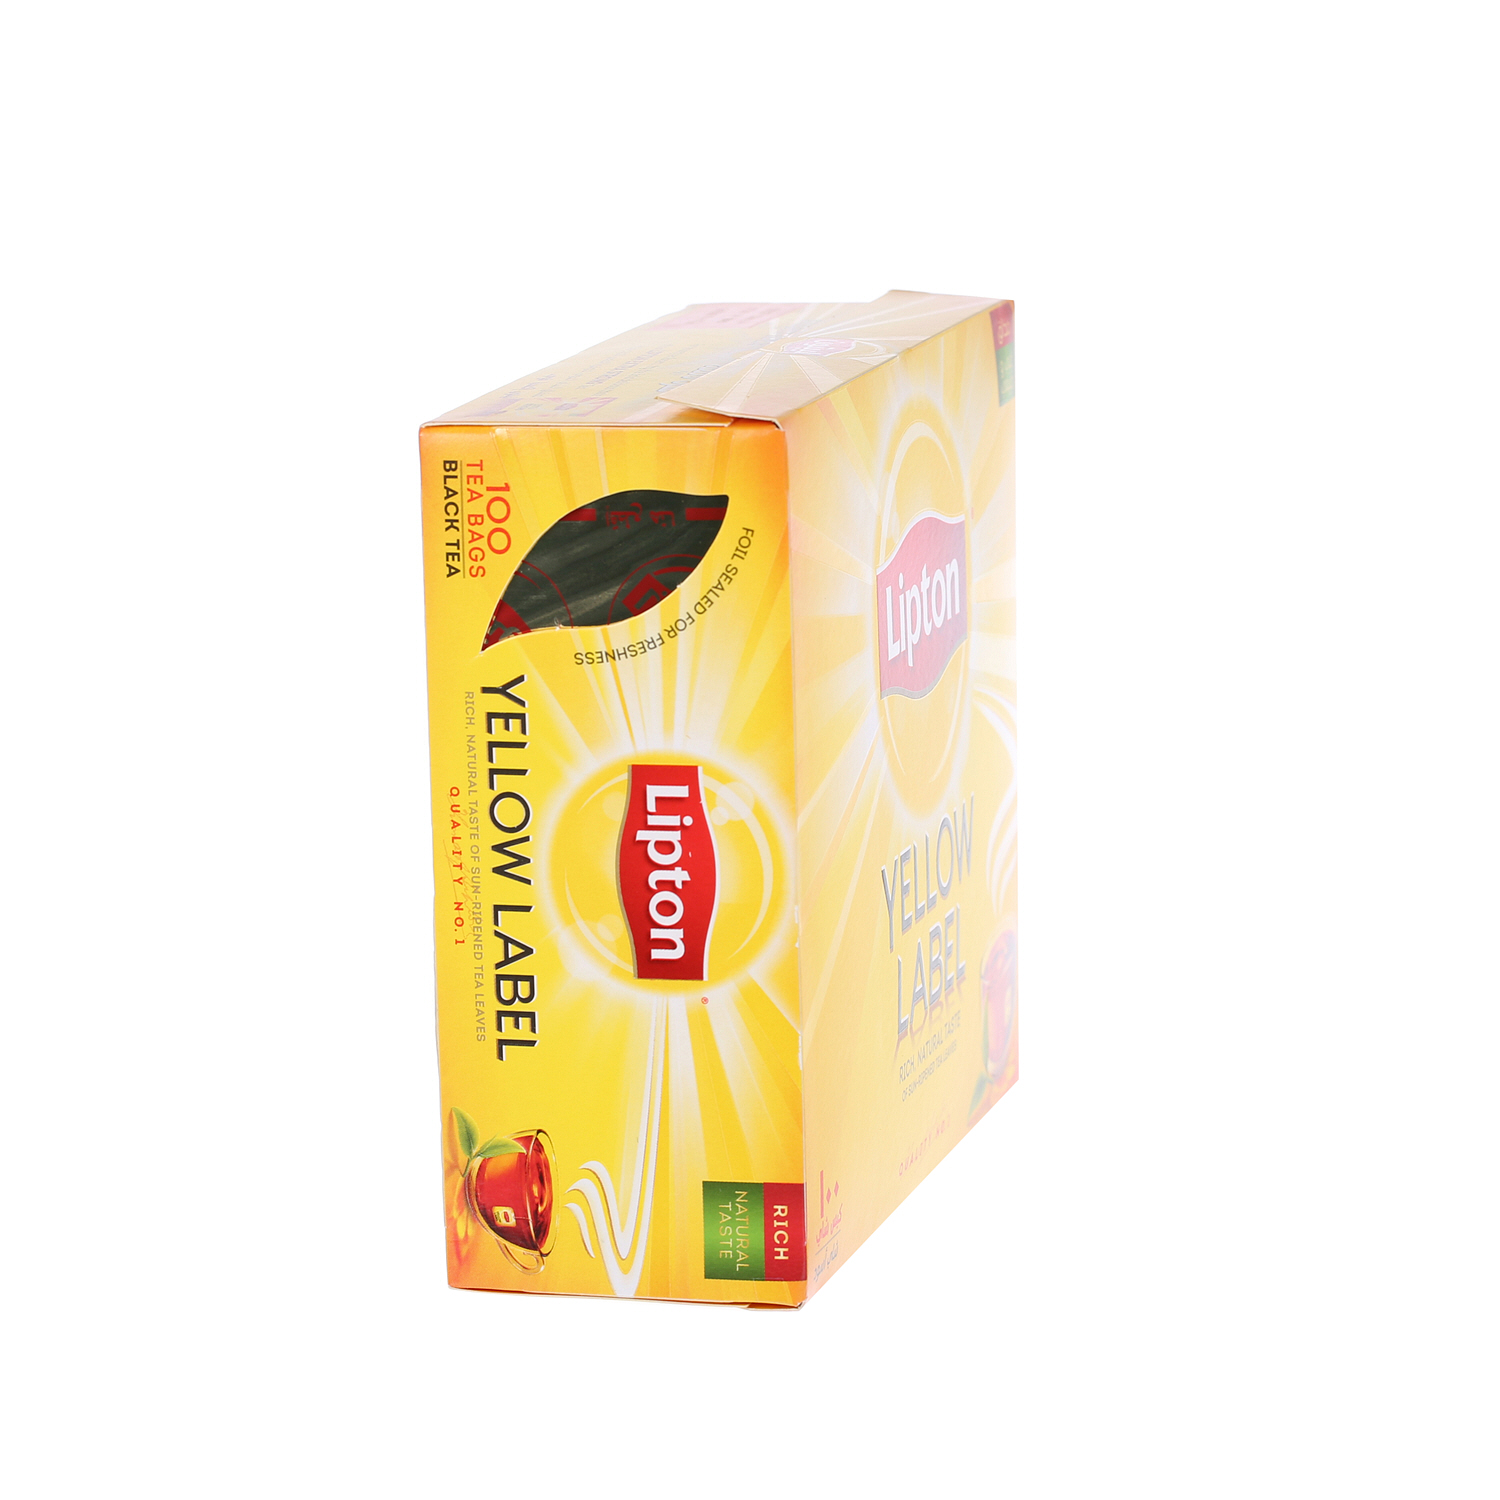 ليبتون العلامة الصفراء شاي أسود 2 جرام × 100 كيس